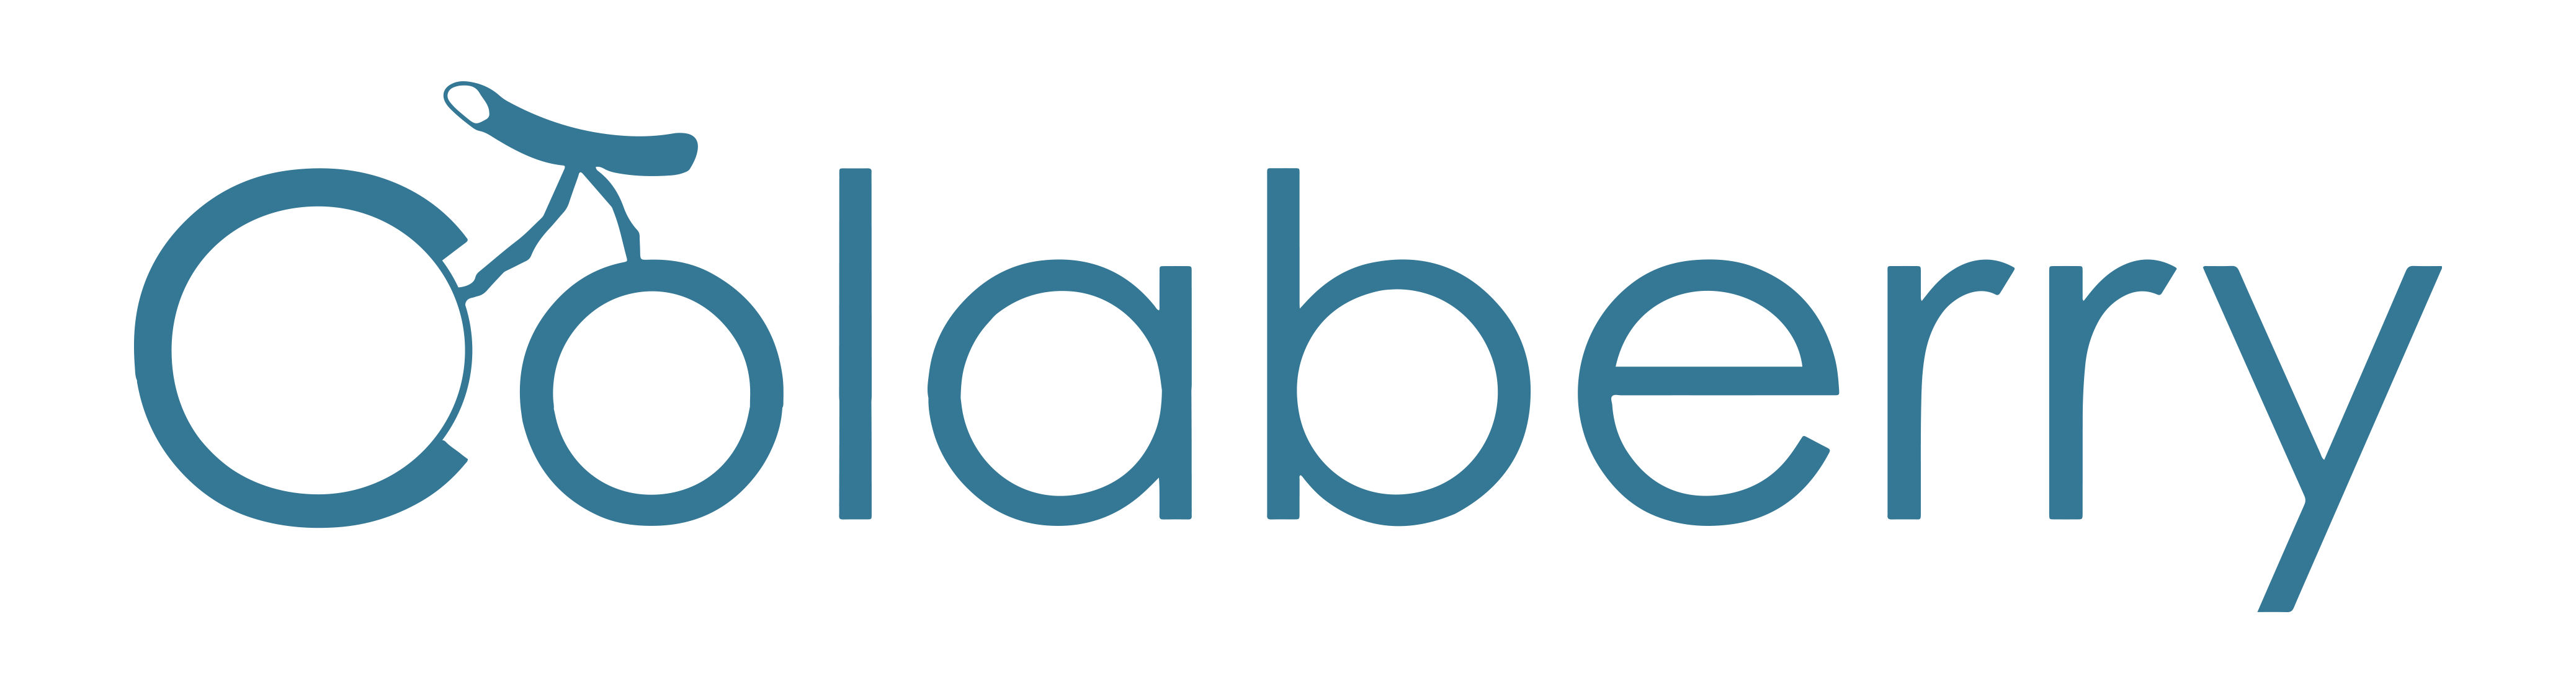 Colaberry Logo